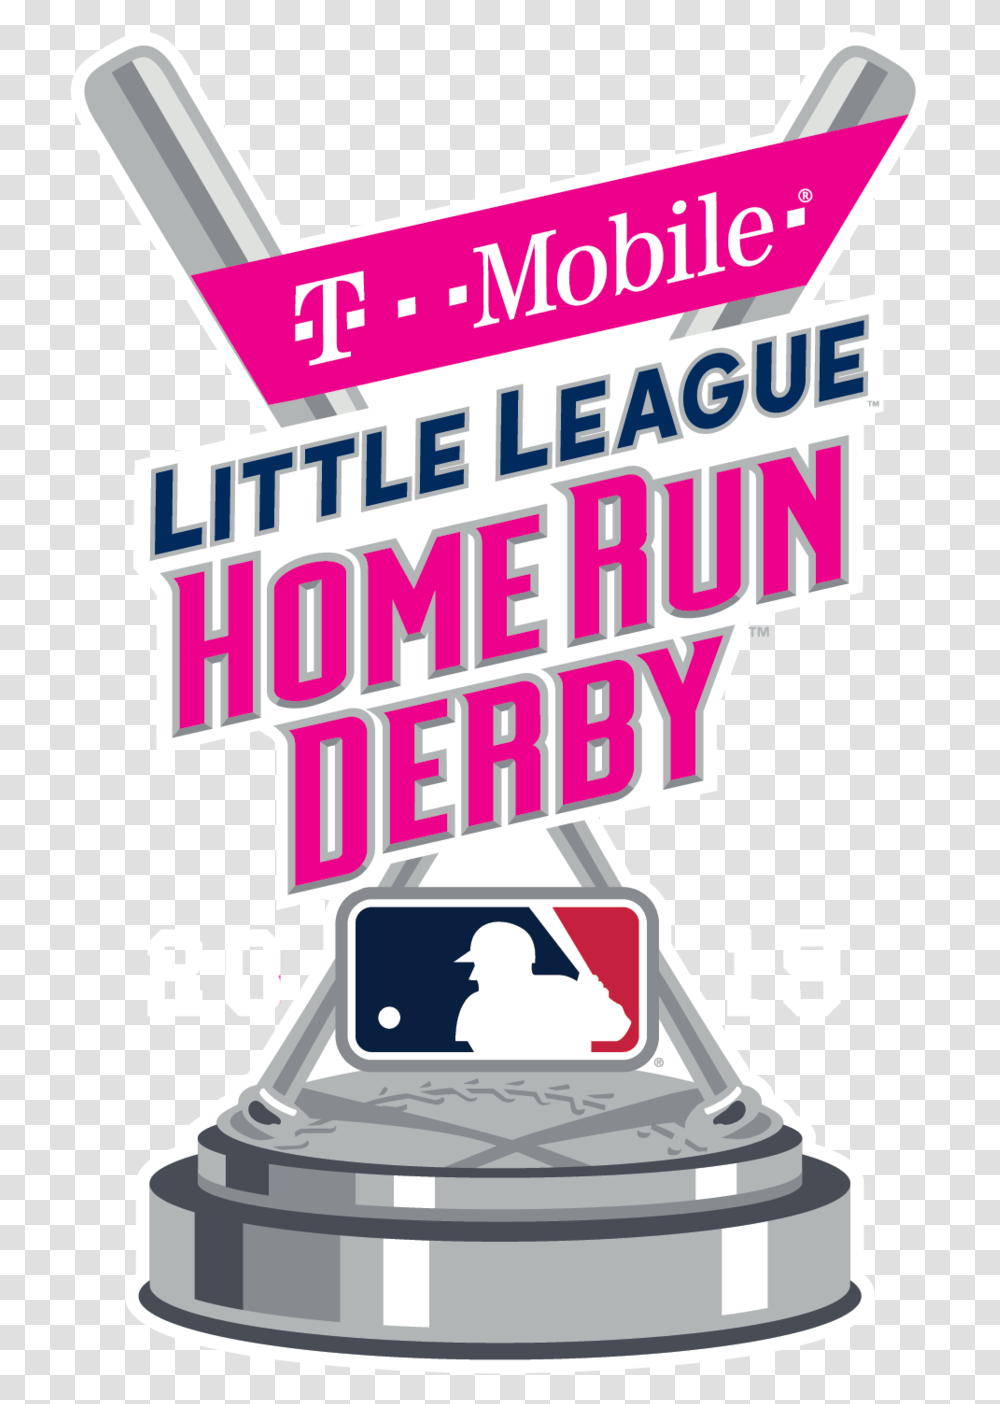 Little League Home Run Derby Fox Major League Baseball, Advertisement, Flyer, Poster, Paper Transparent Png